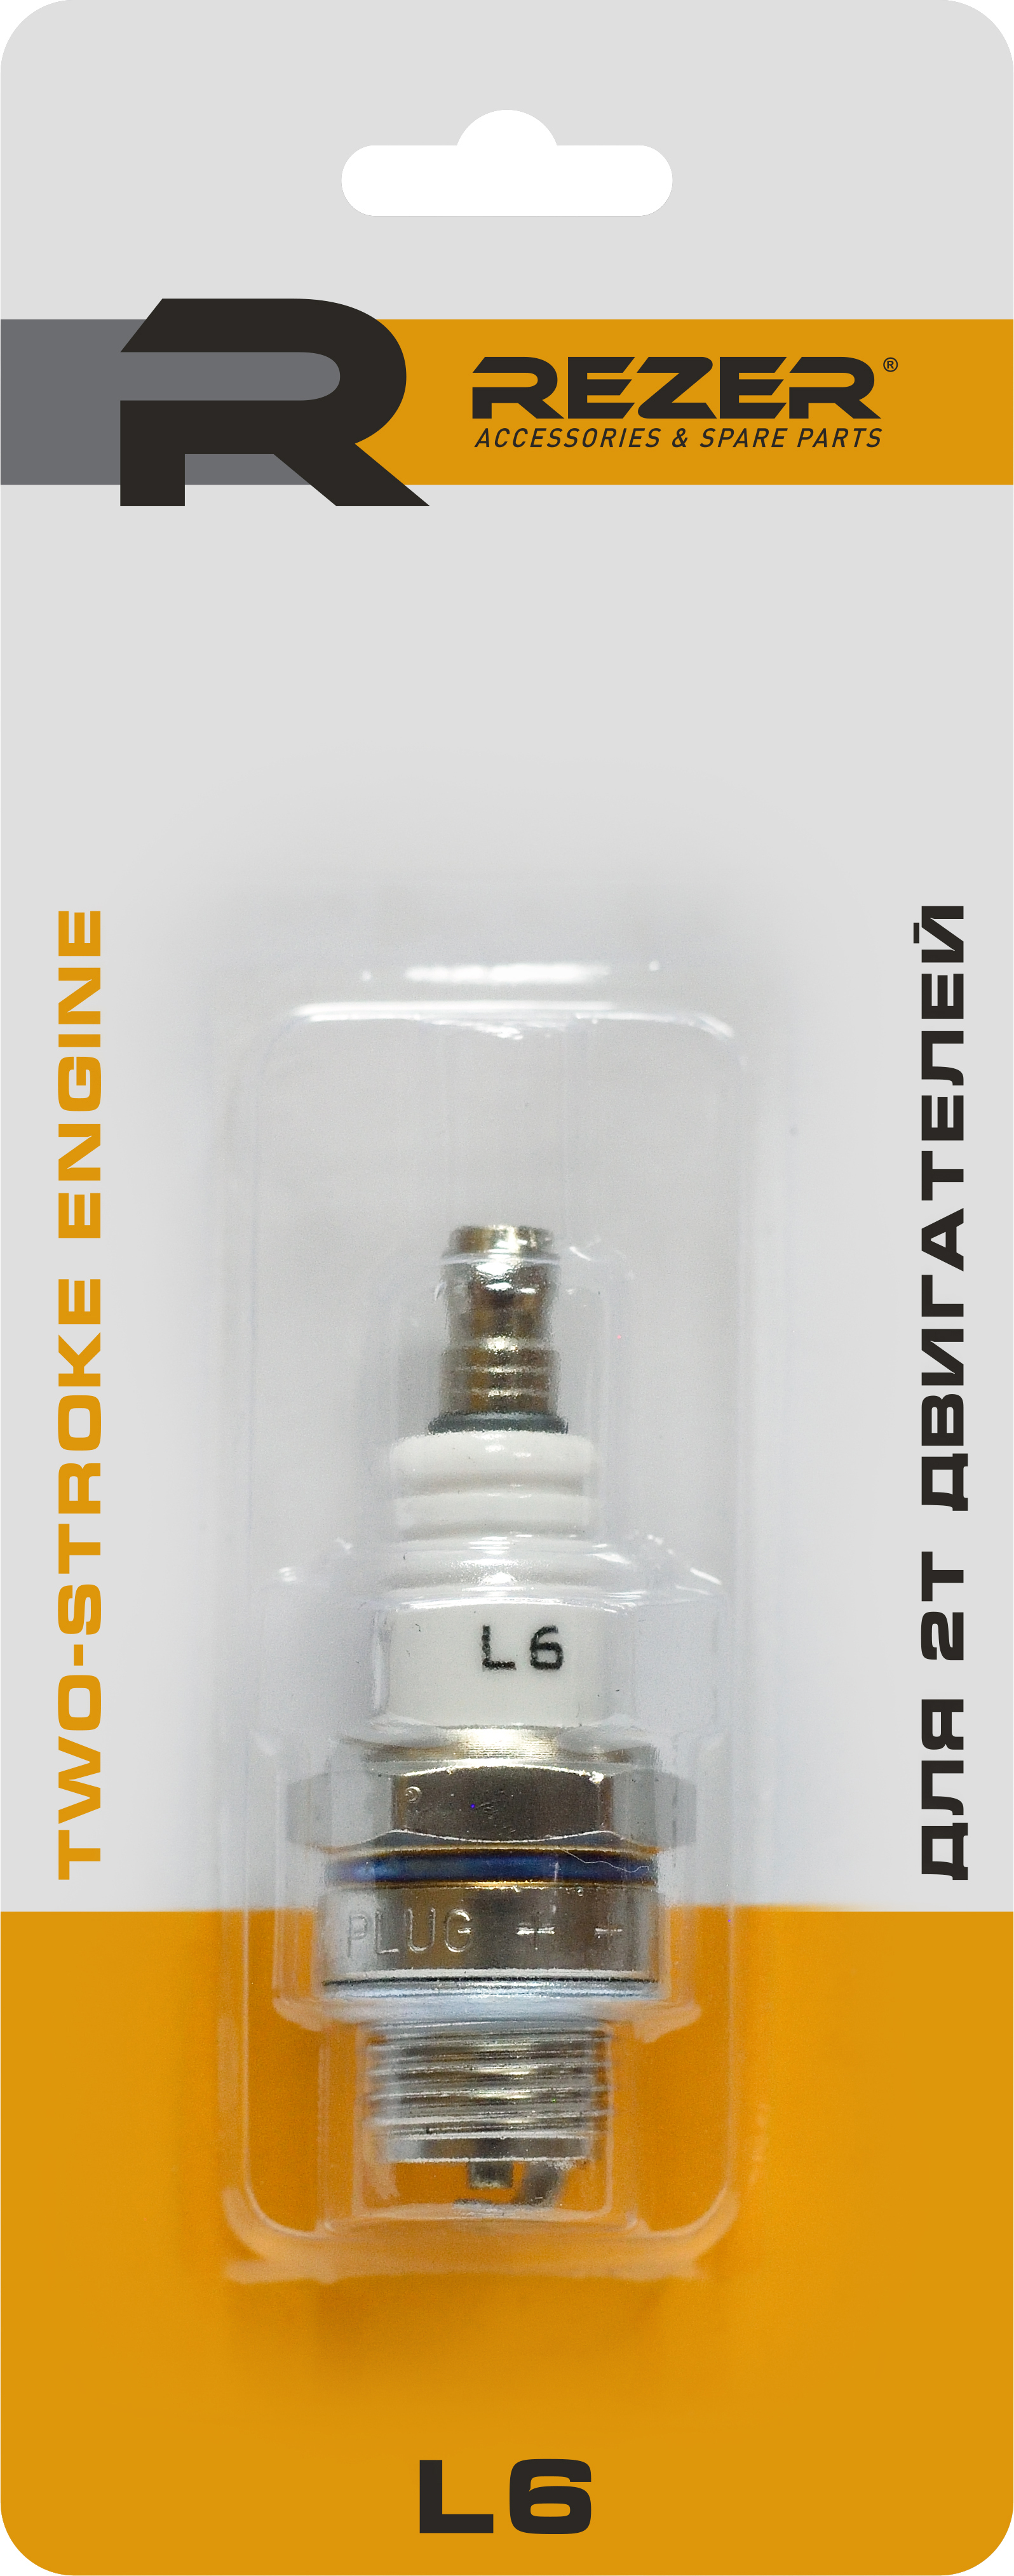 83413157 Свеча зажигания Rezer L6 для 2-тактных двигателей STLM-0041217 Santreyd